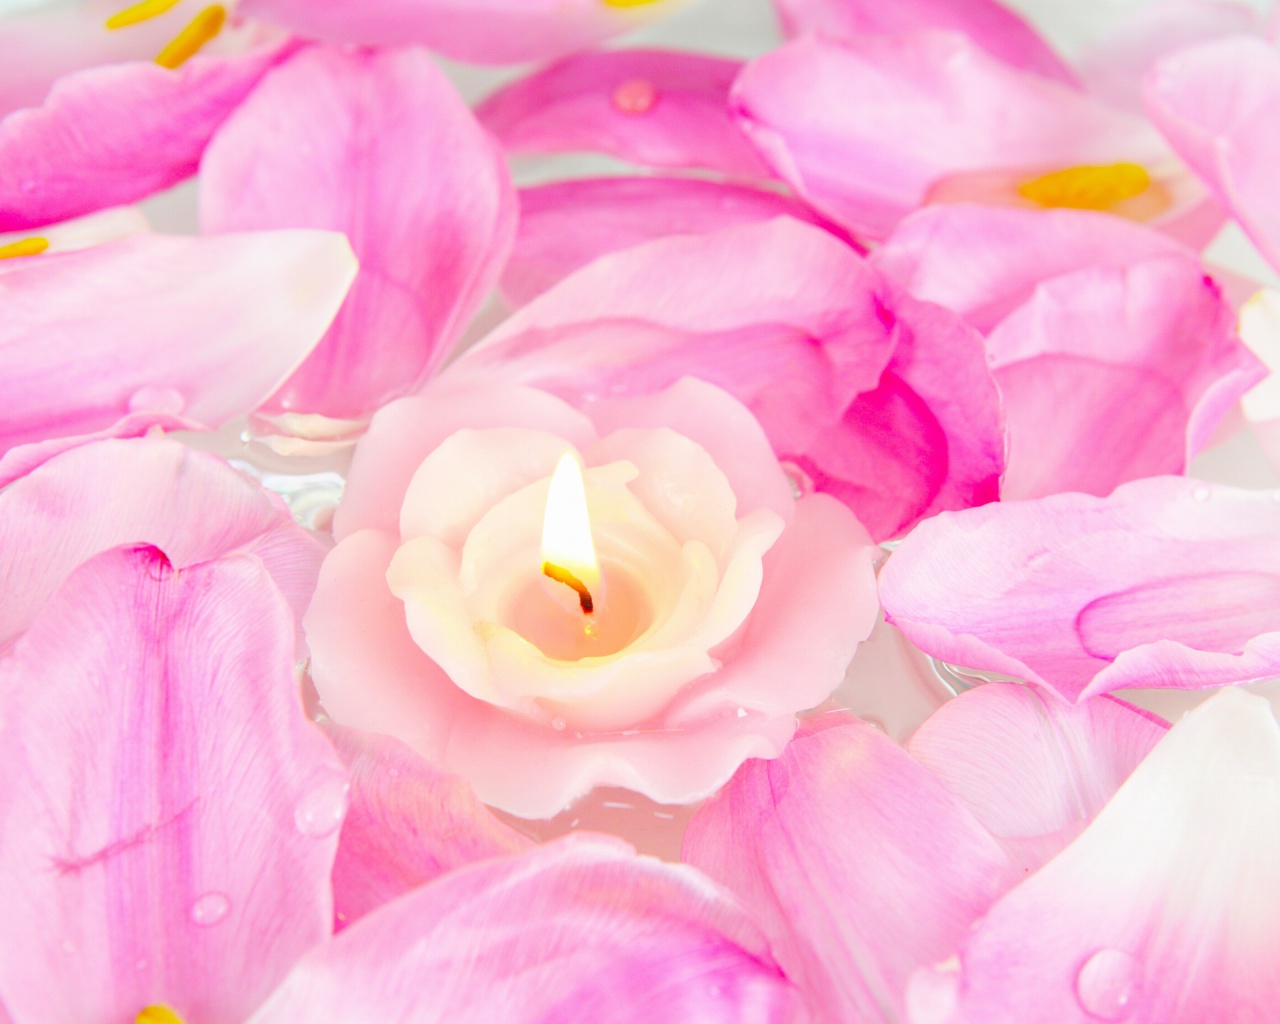 Candle on lotus petals screenshot #1 1280x1024